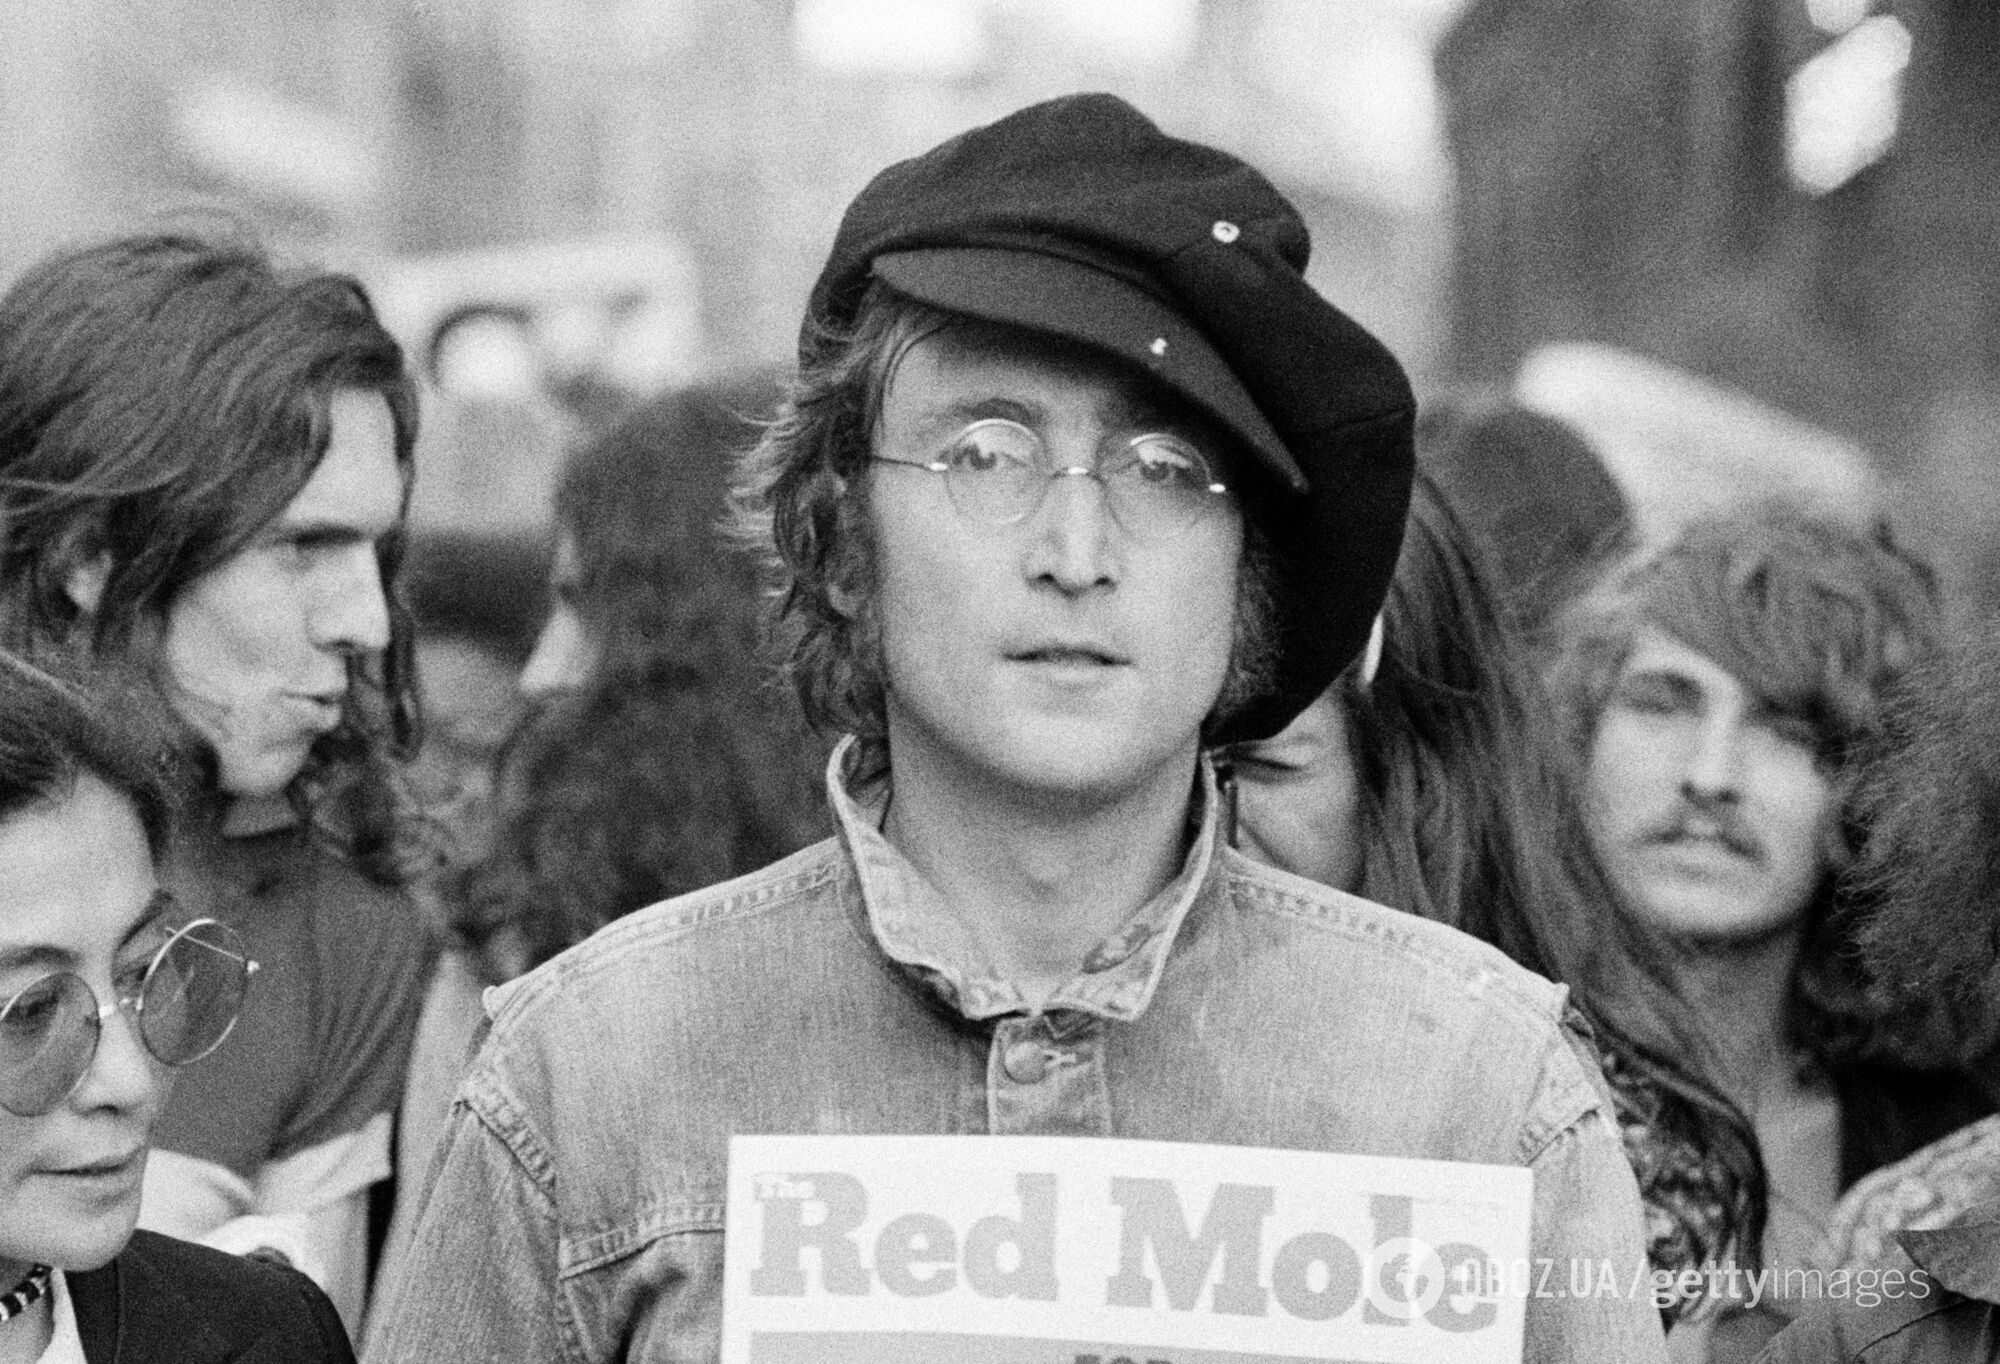 Вышел трейлер фильма "Джон Леннон: убийство без суда": документалка впервые обнародует странные извинения убийцы